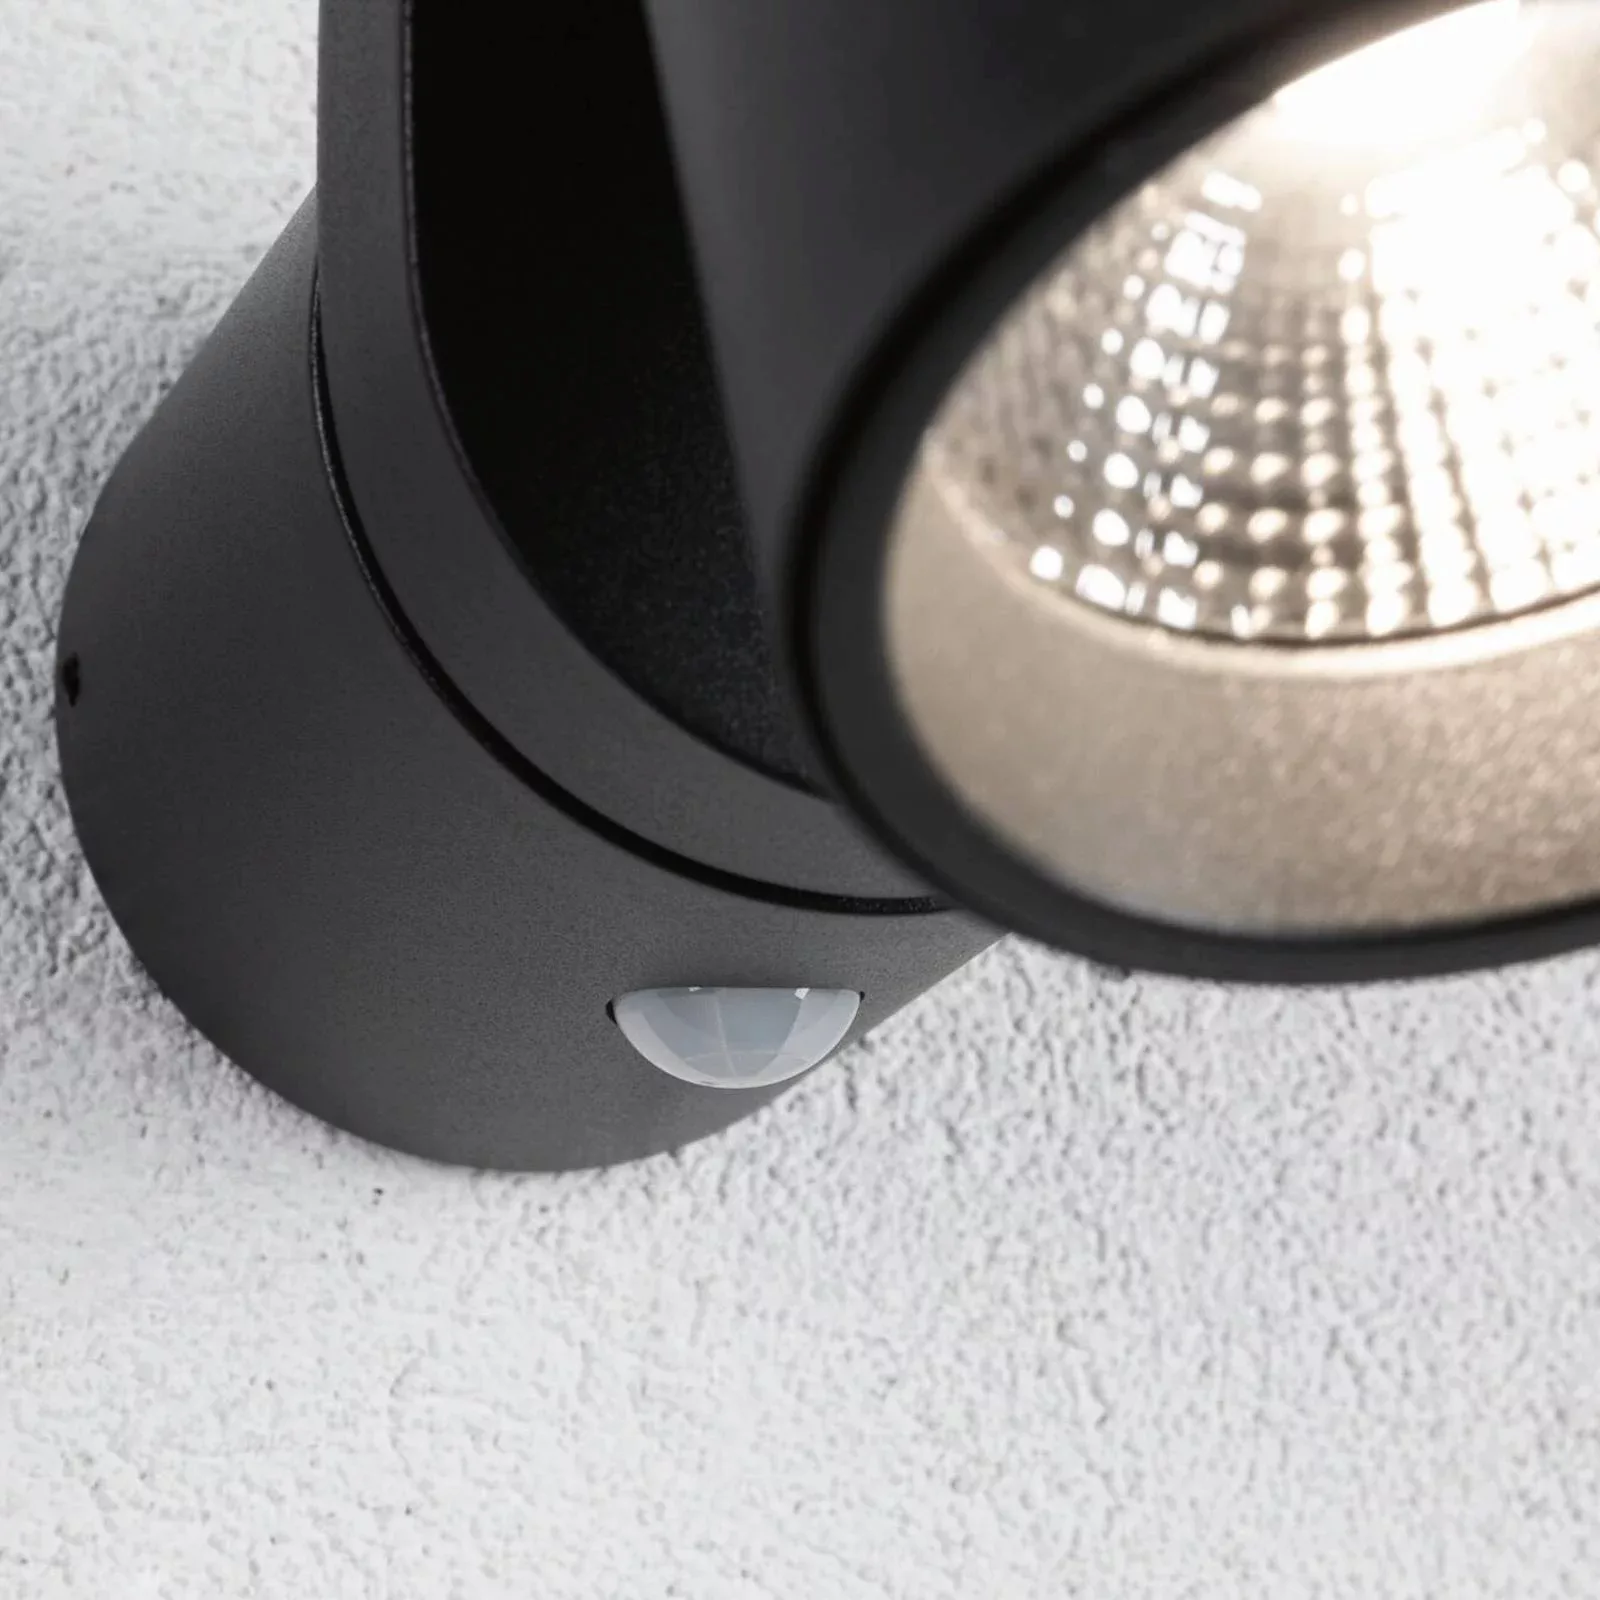 LED Wandleuchte Cuff in Weiß 10W 700lm IP44 mit Bewegungsmelder und Dämmeru günstig online kaufen